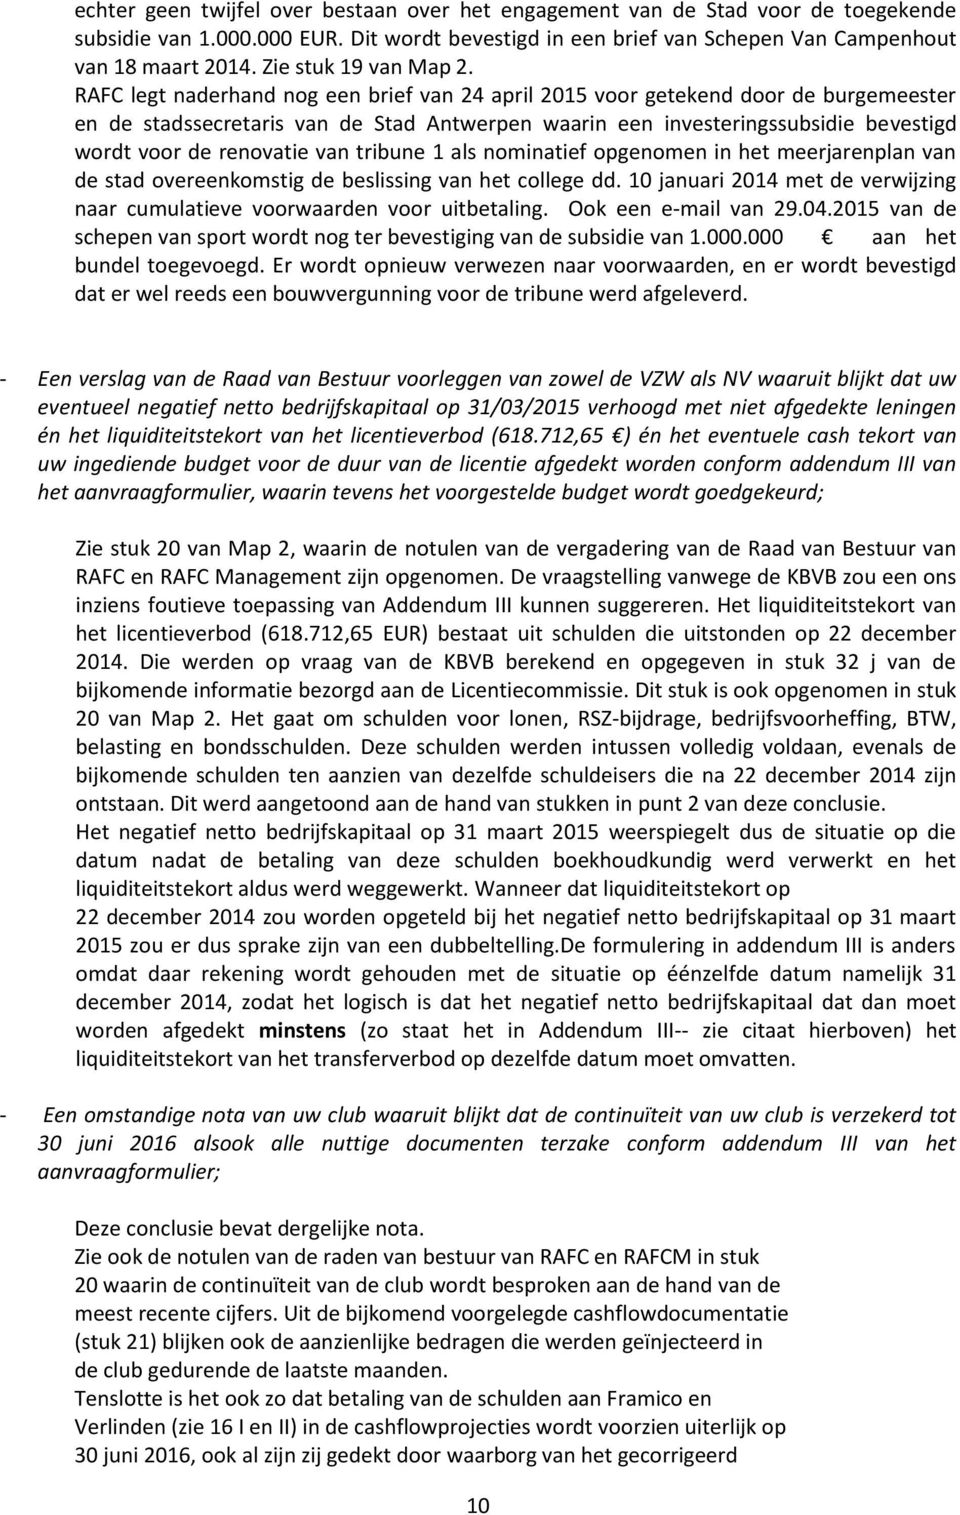 RAFC legt naderhand nog een brief van 24 april 2015 voor getekend door de burgemeester en de stadssecretaris van de Stad Antwerpen waarin een investeringssubsidie bevestigd wordt voor de renovatie